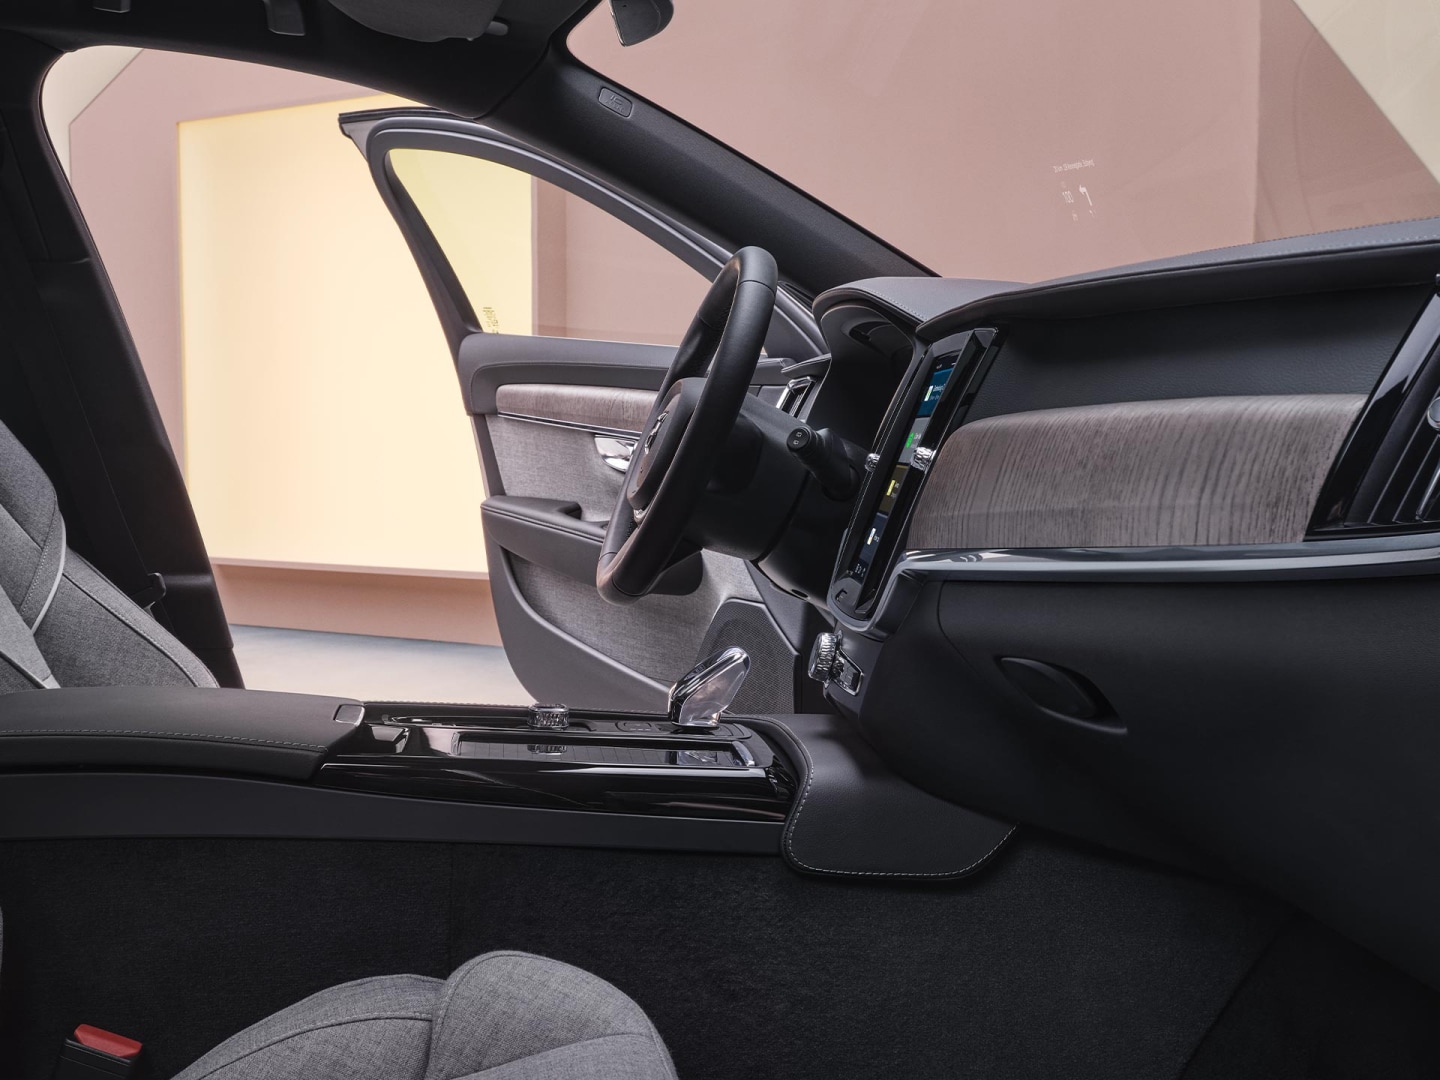 Vista interior del Volvo V90 híbrido enchufable desde el lado del copiloto.